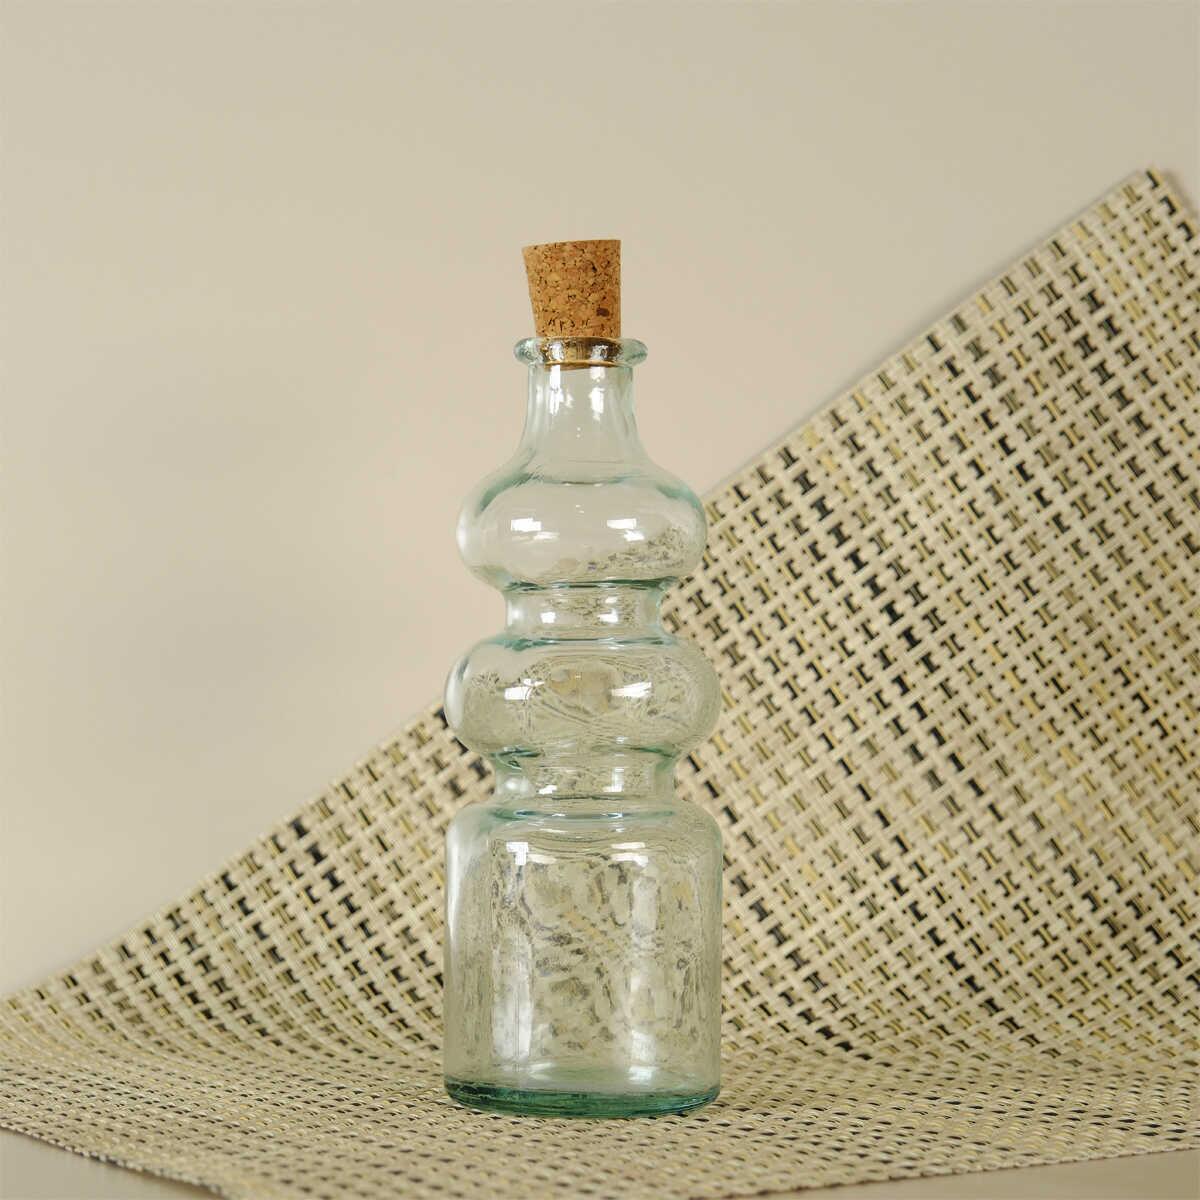 Sanmiguel Oil Vinegar Bottle 300 cc 1